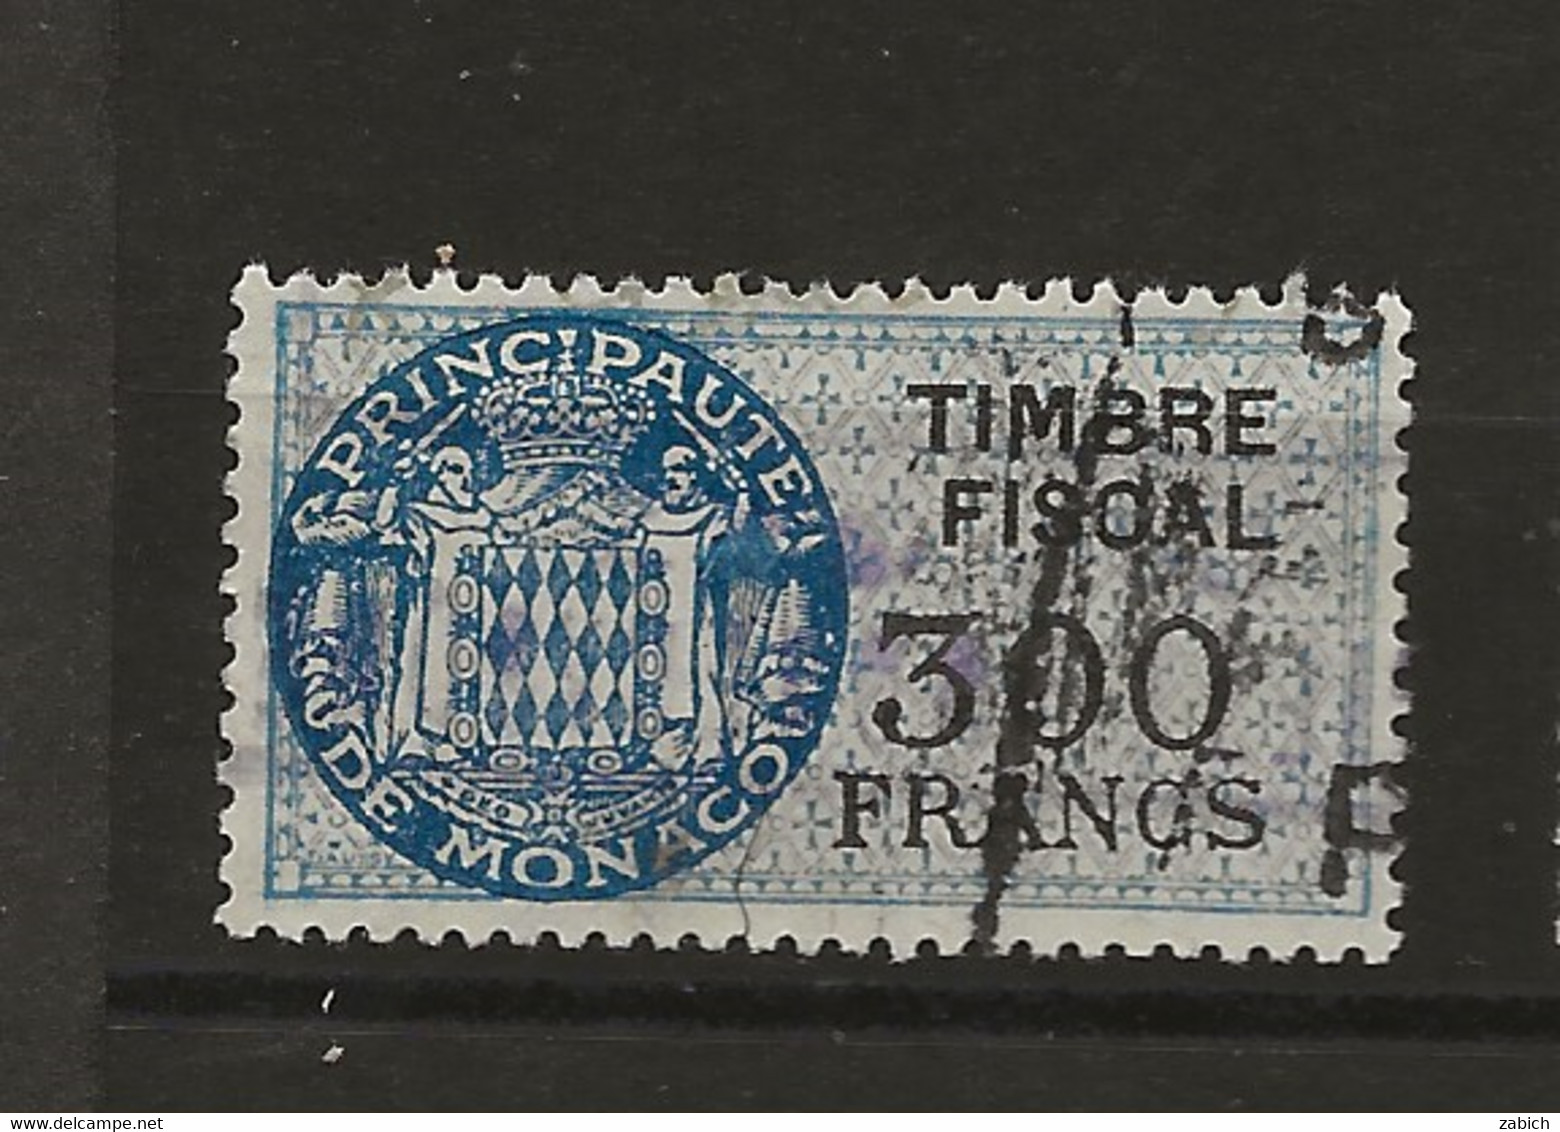 TIMBRES FISCAUX DE MONACO SERIE UNIFIEE  De 1949   N°17  300 Francs Bleu Oblitéré Cote 60 € - Steuermarken